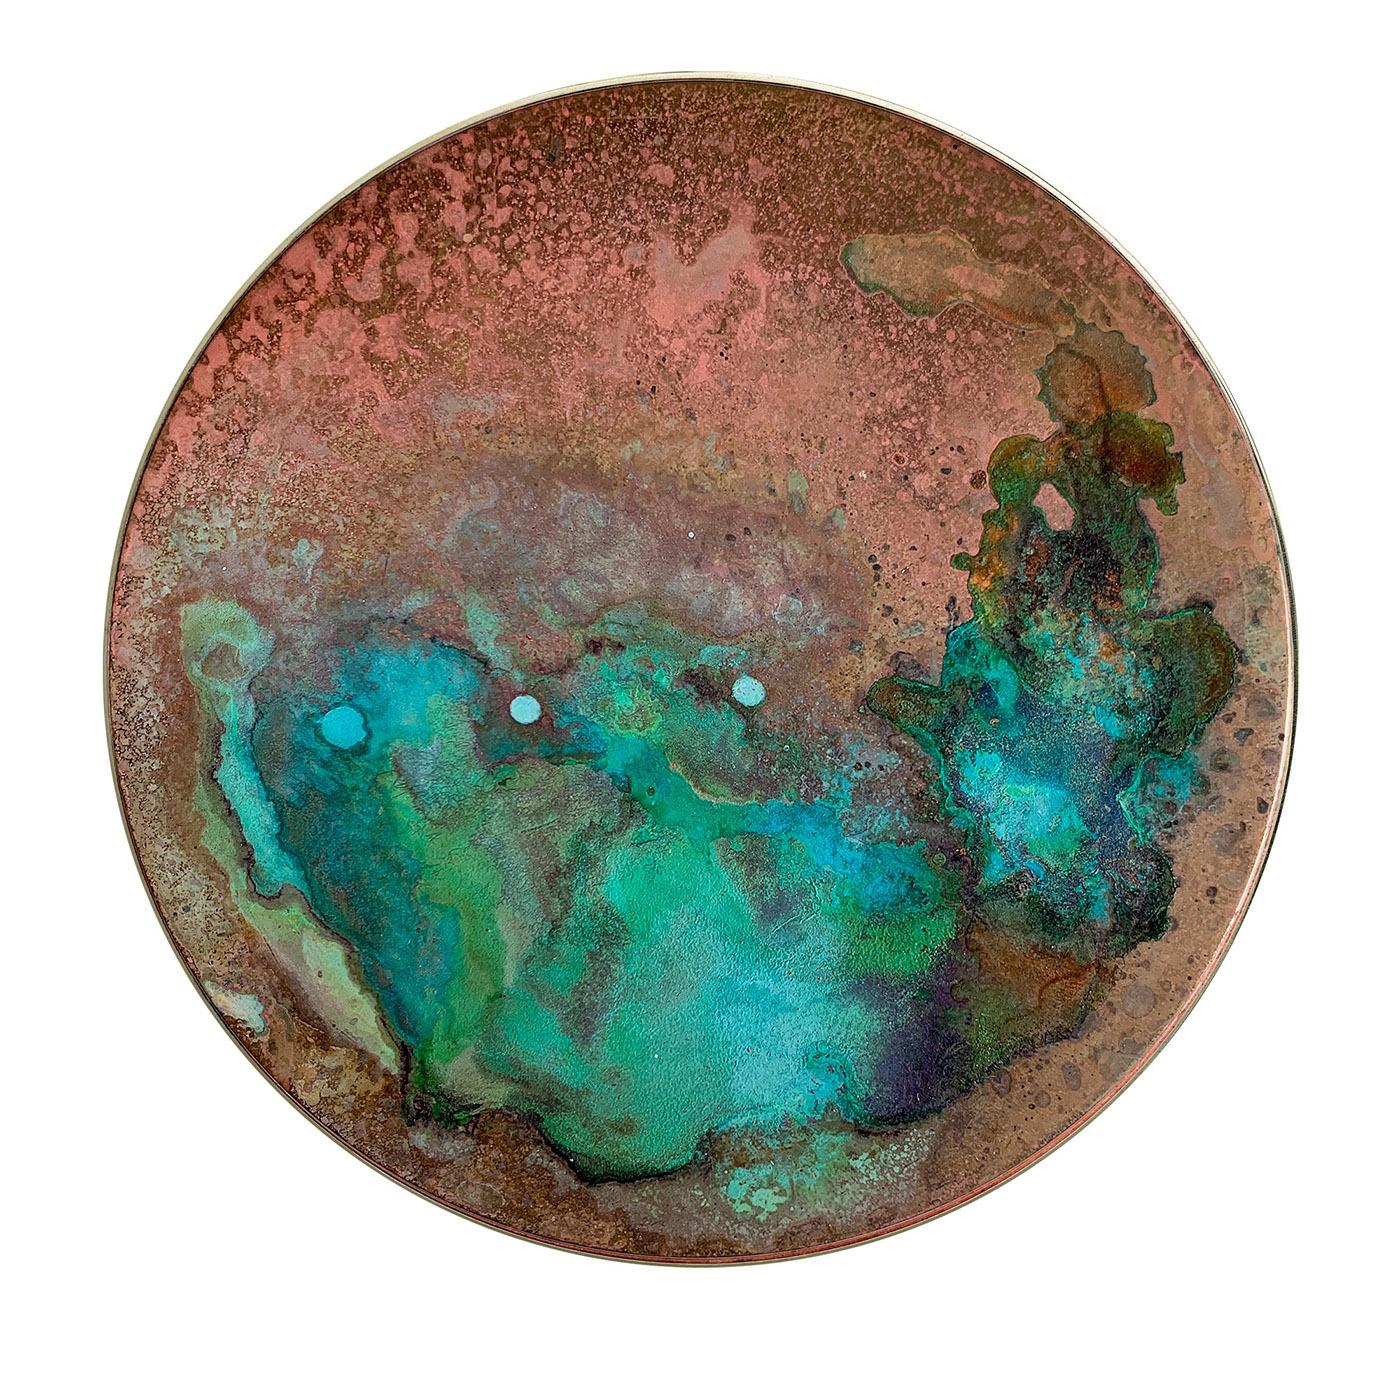 Faisant partie de la collection Aurora, ce disque décoratif singulier doit son esthétique époustouflante aux nuances et tracés imprévisibles créés par les oxydes. Le turquoise, le bleu et le vert se fondent dans les nuages qui sont placés sur une